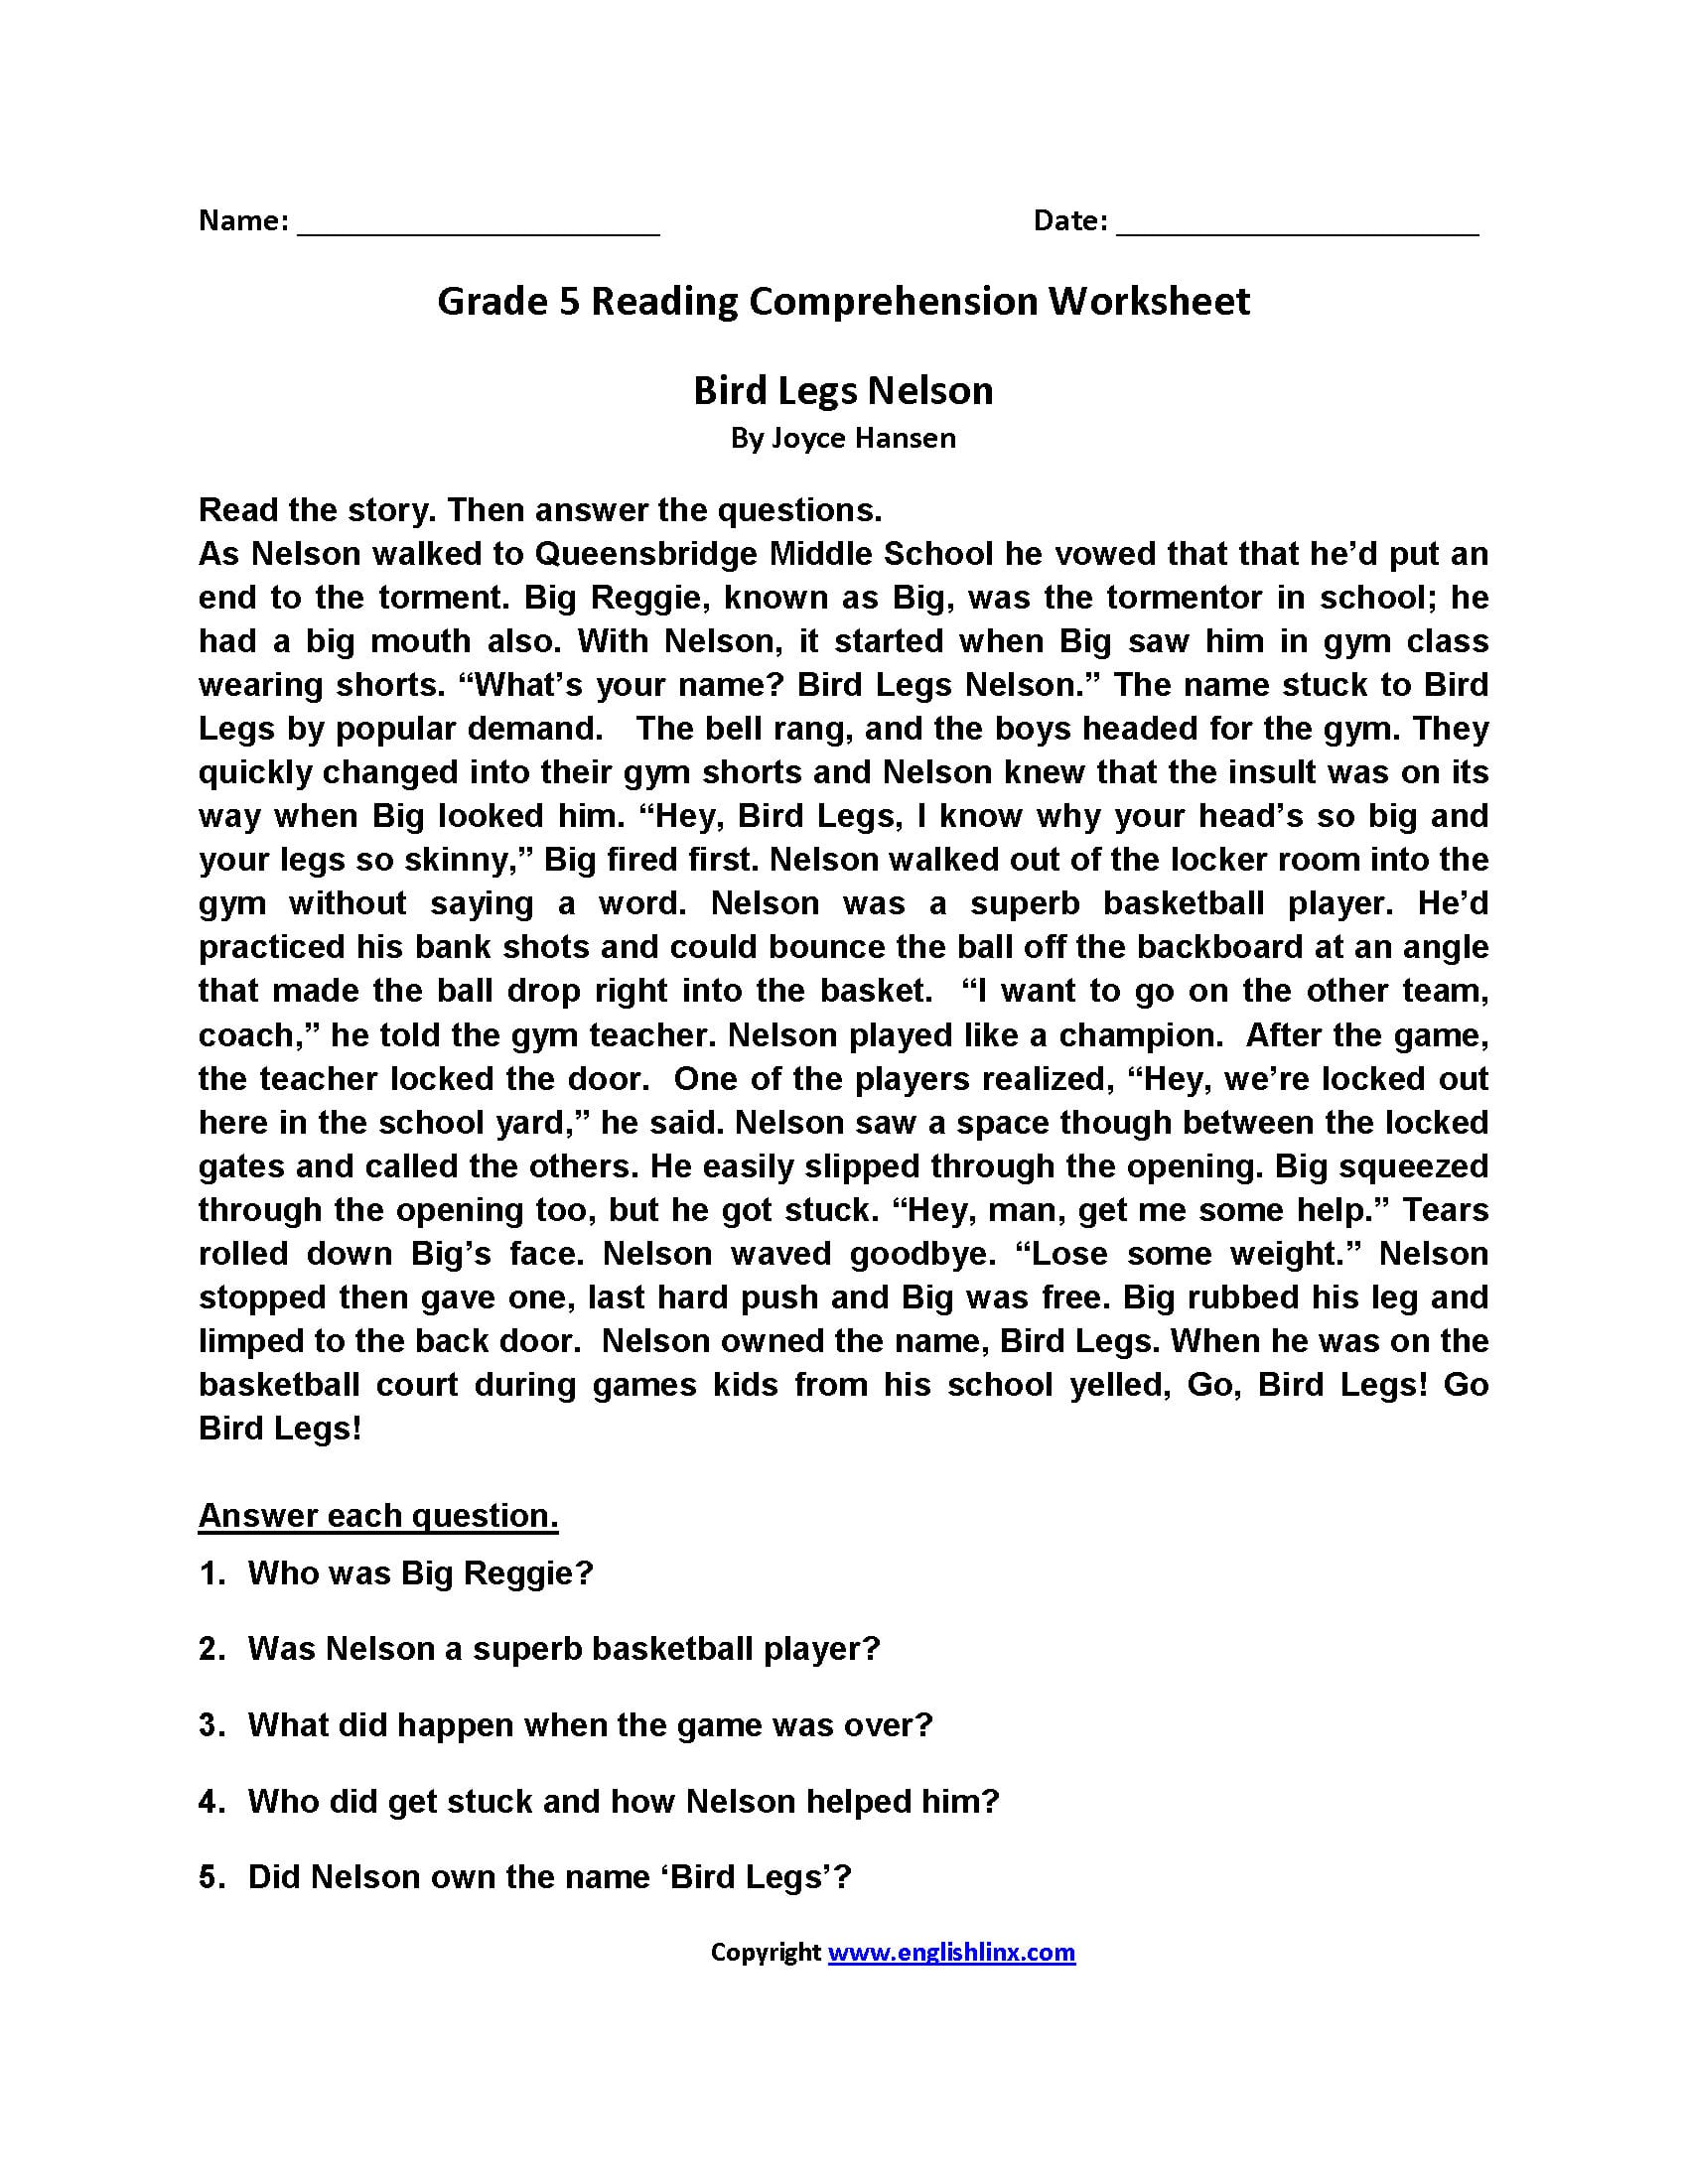 Grade 5 Reading Comprehension Worksheets Pdf Db excel